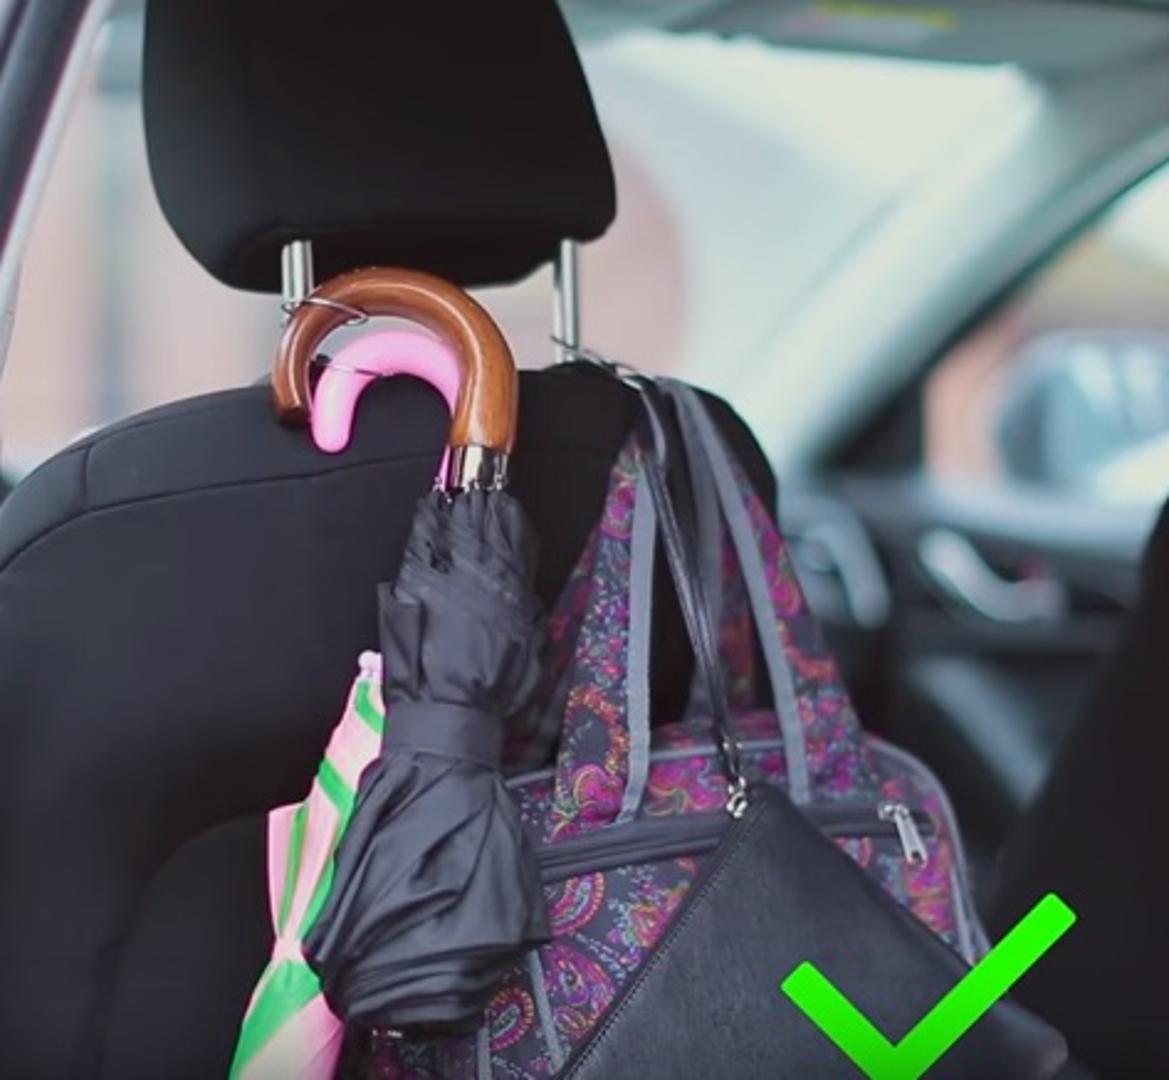 Ako ne volite da su vam stvari razbacane po automobilu, jednostavno  možete od komada žice improvizirati "kuku" koja će poslužiti kao vješalica na naslonu sjedala za torbe, kišobrane. 